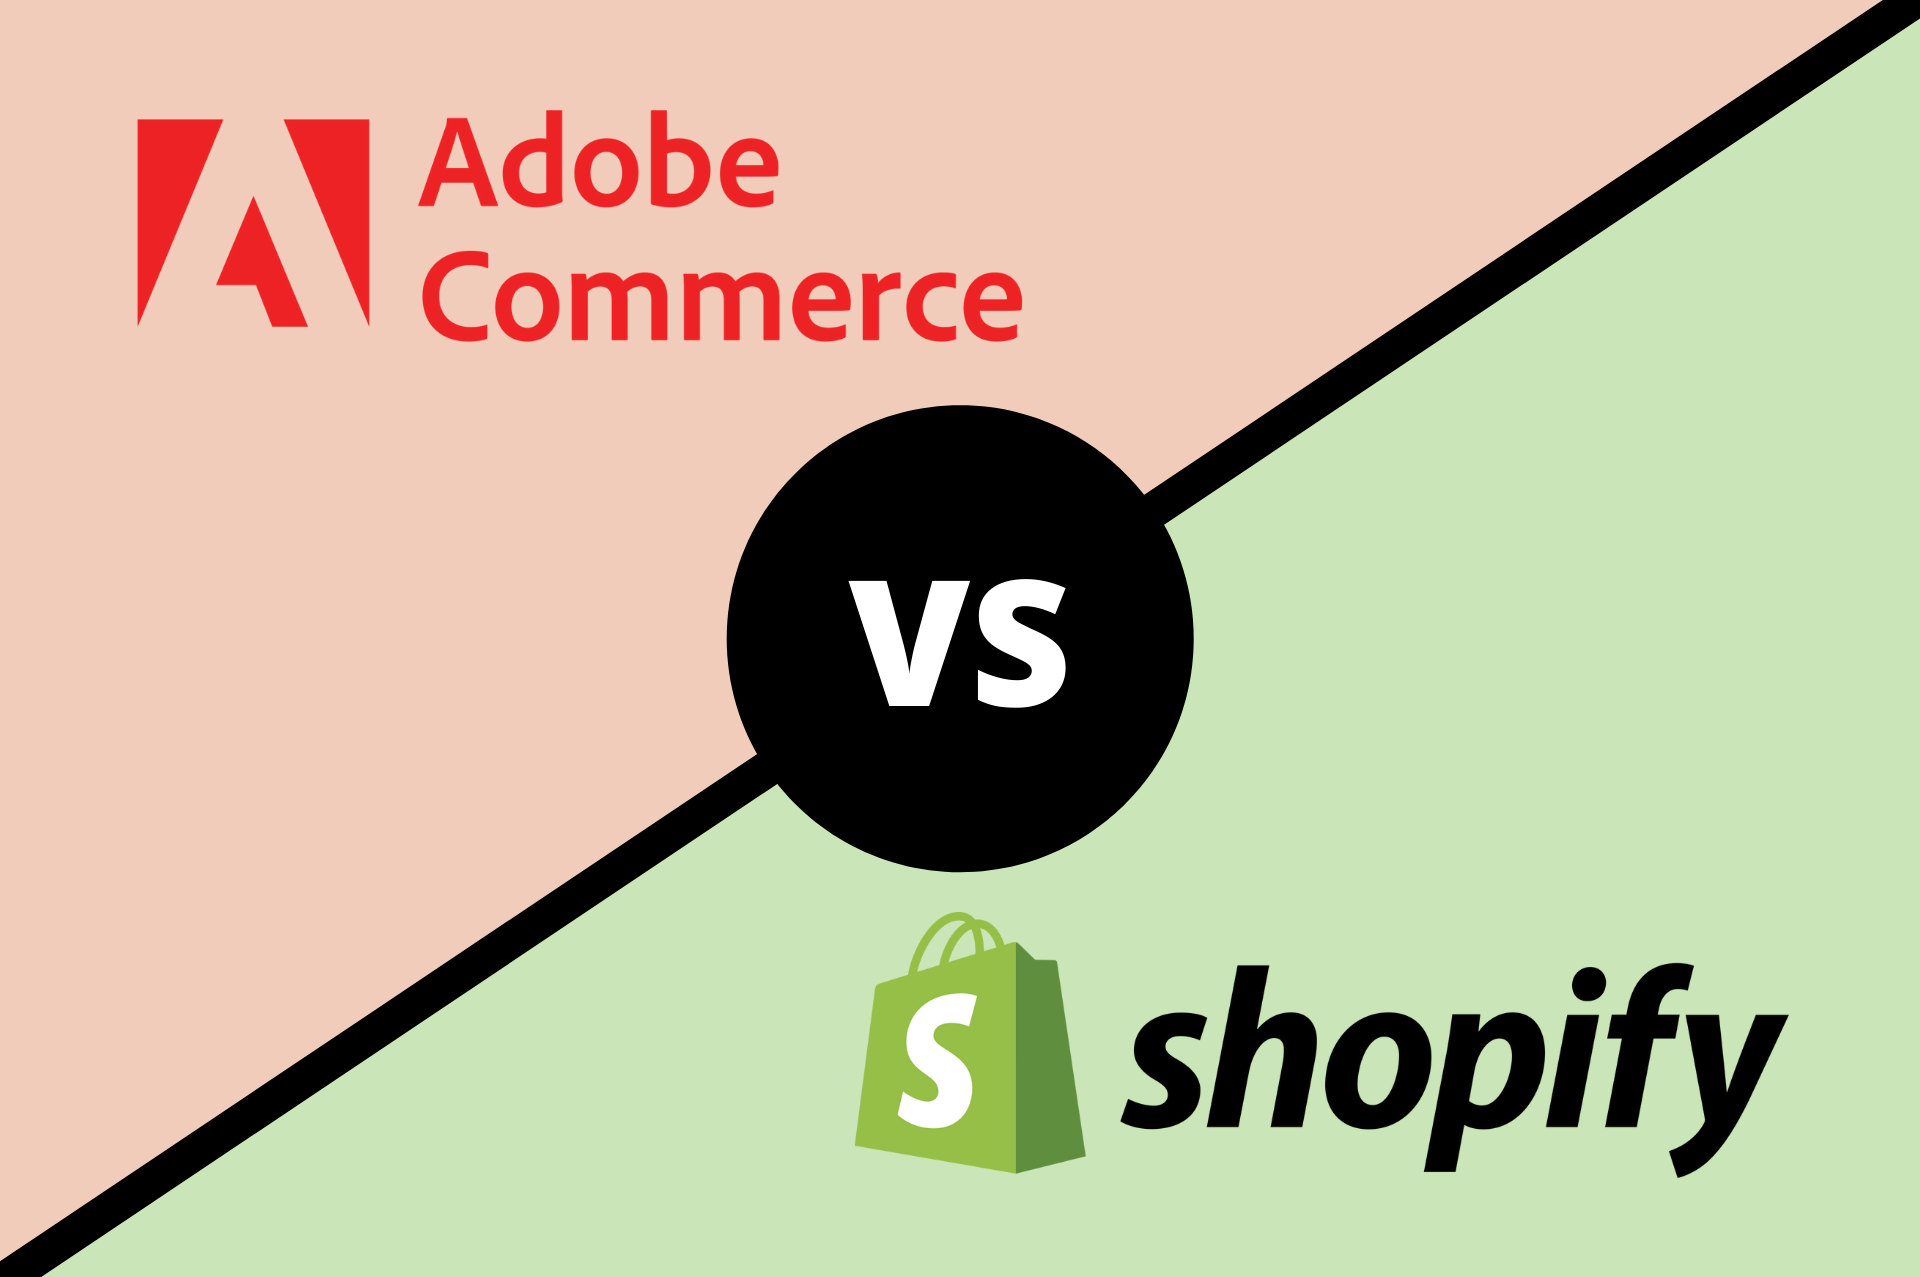 Adobe Commerce VS Shopify